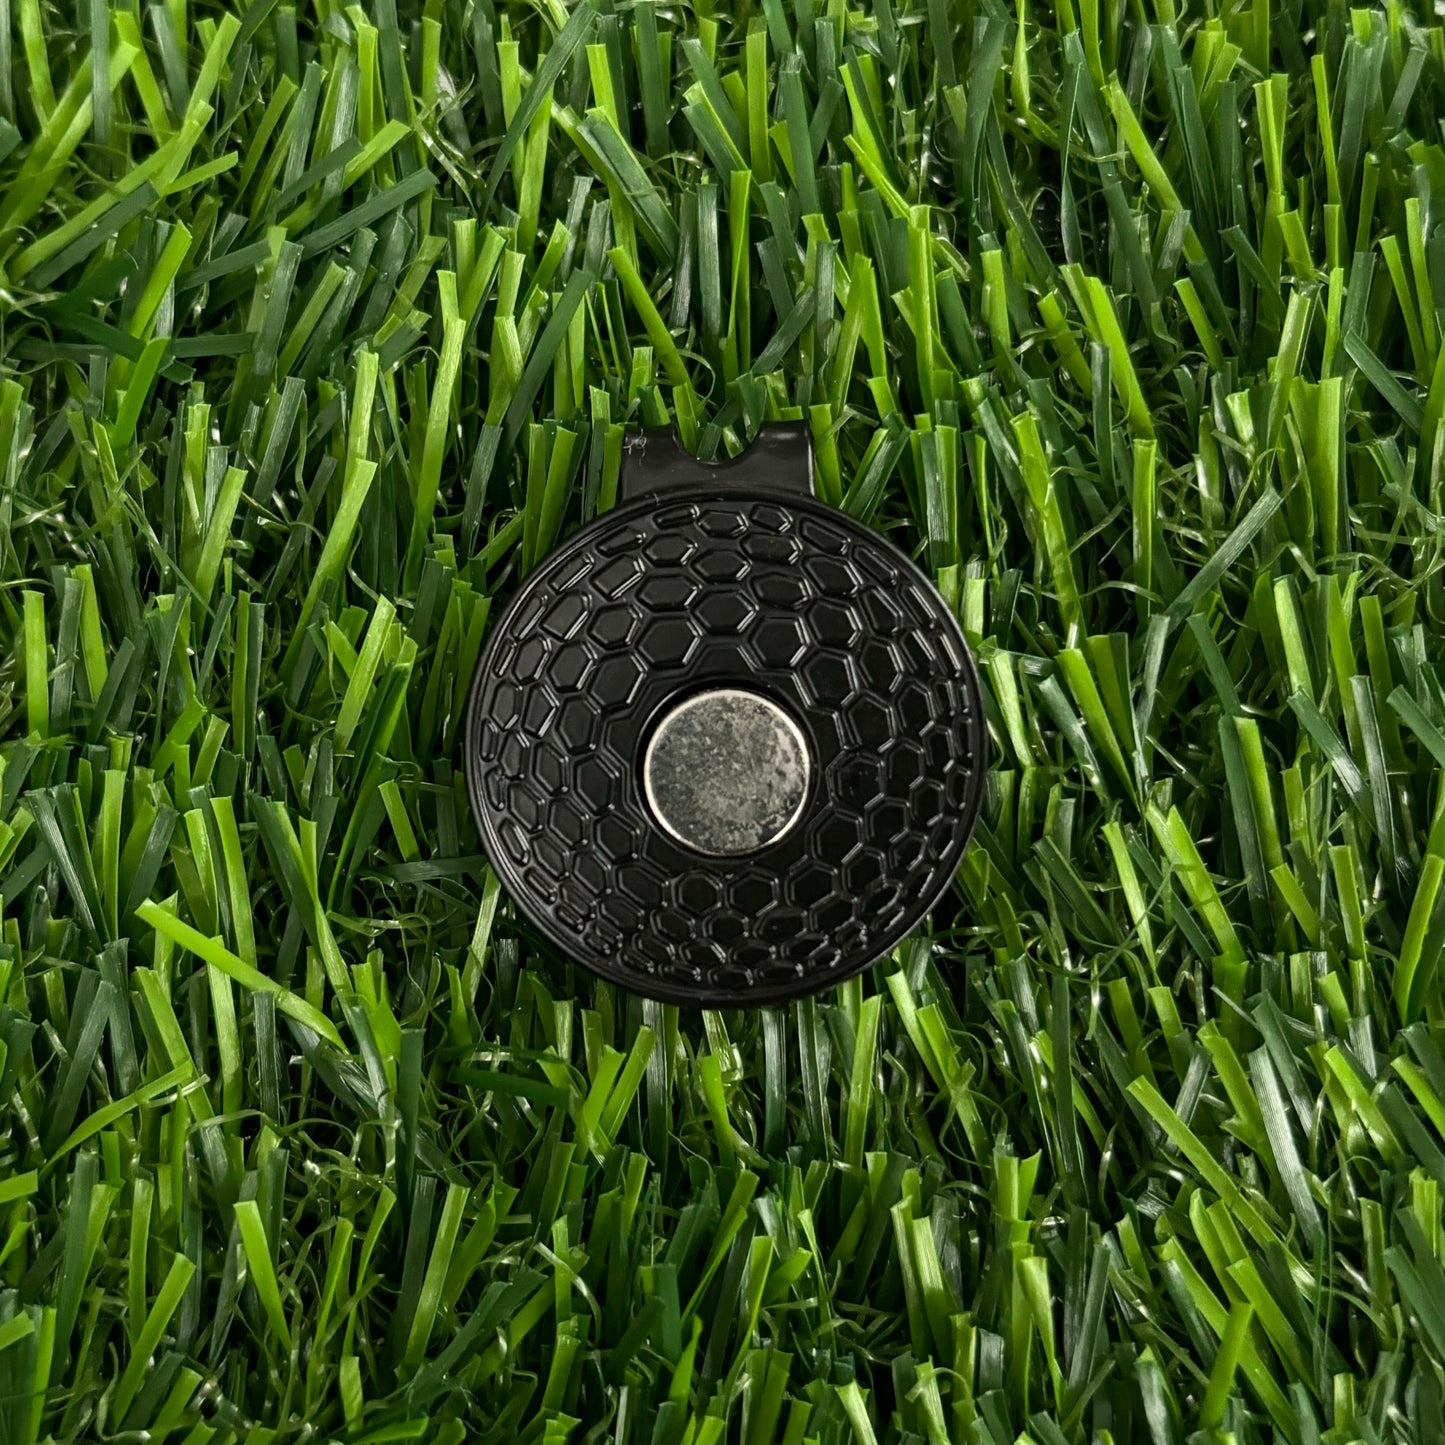 Blue Donut Golf Ball Marker